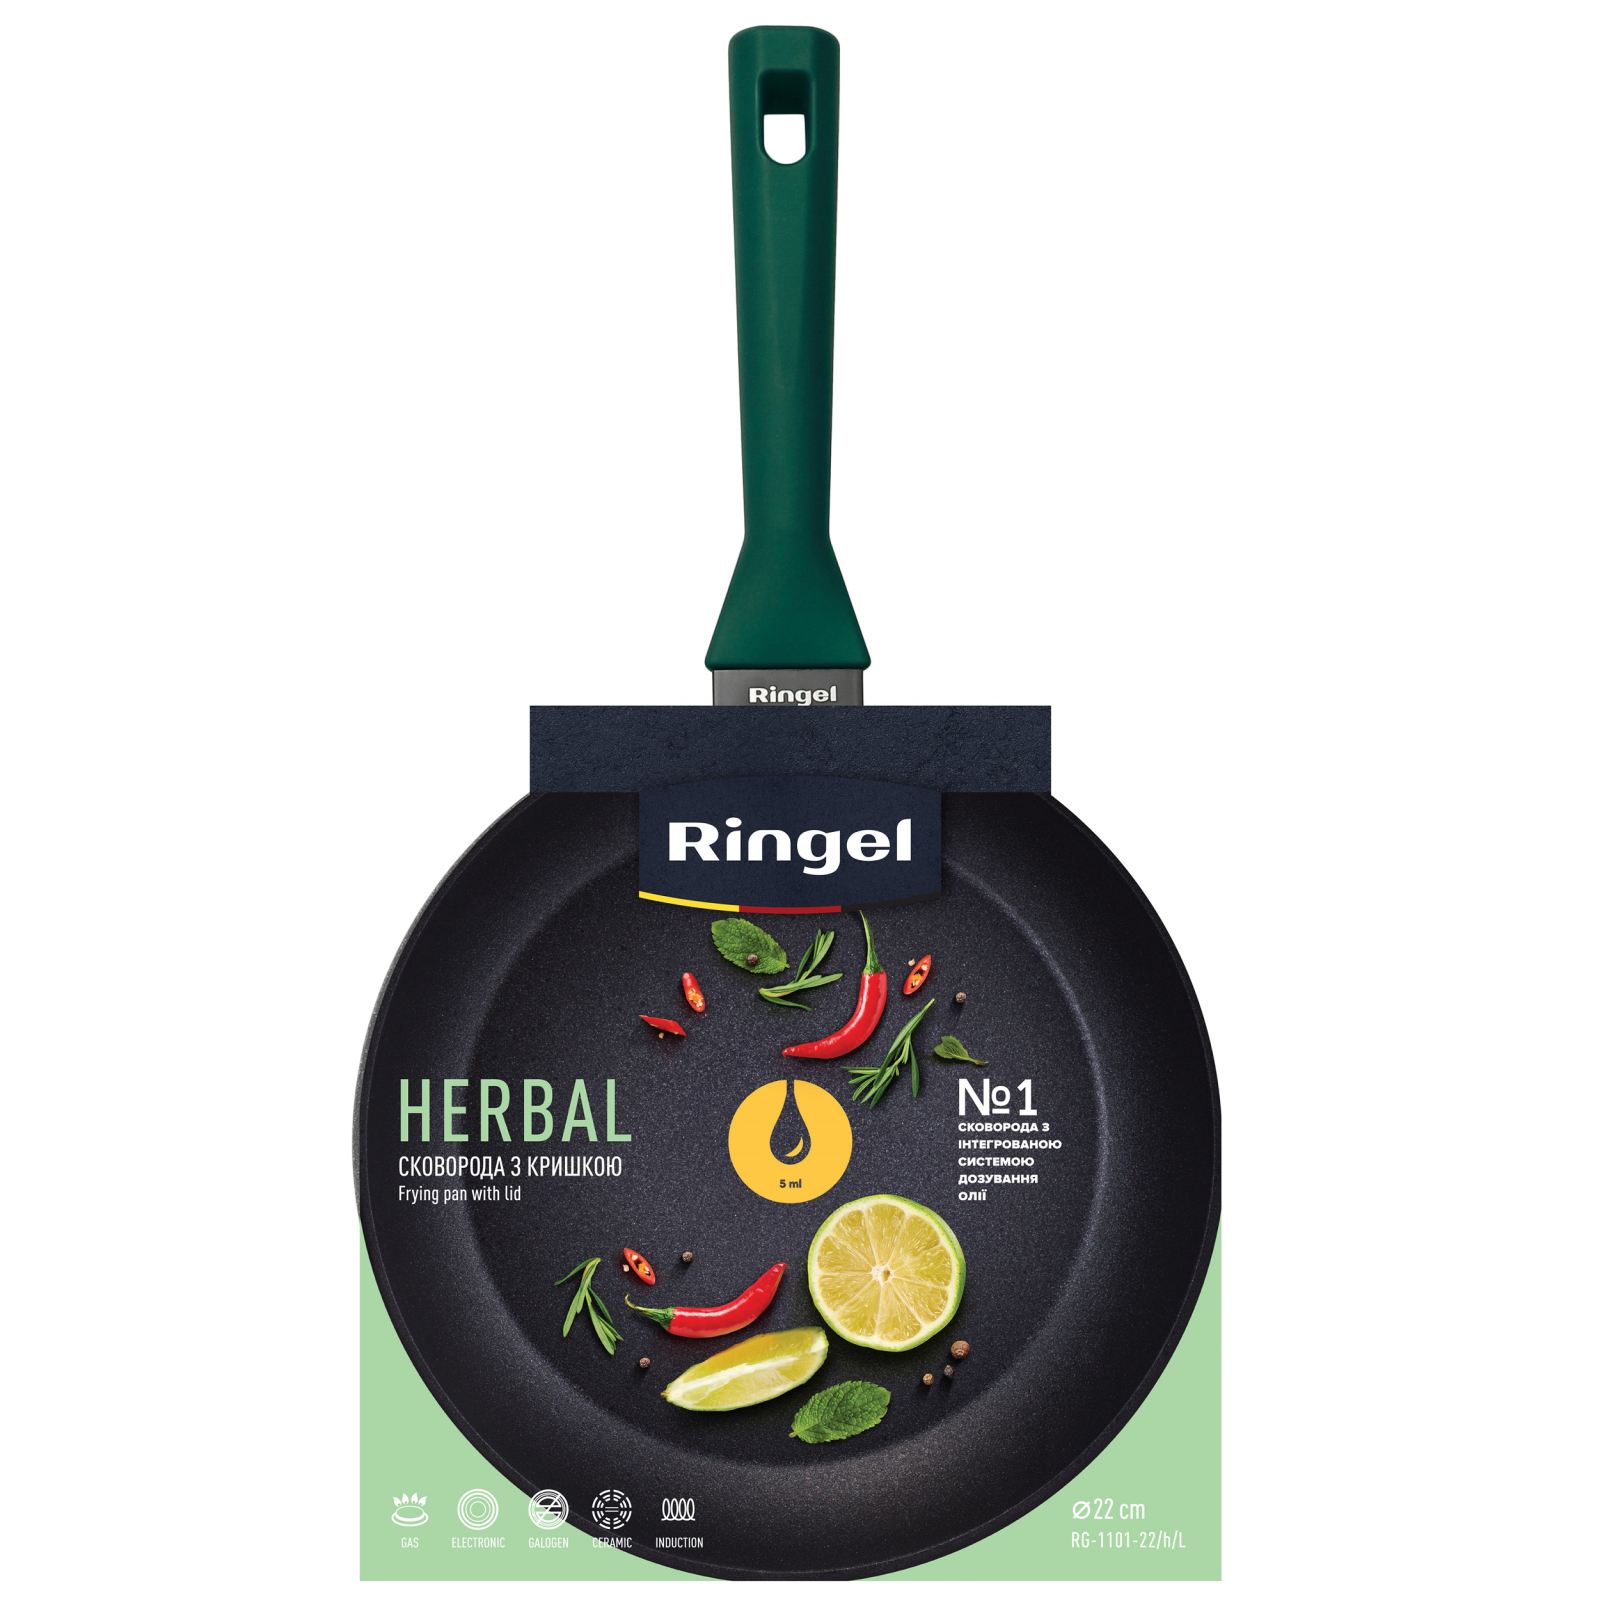 Сковорода Ringel Herbal 22 см (RG-1101-22/h/L) изображение 5